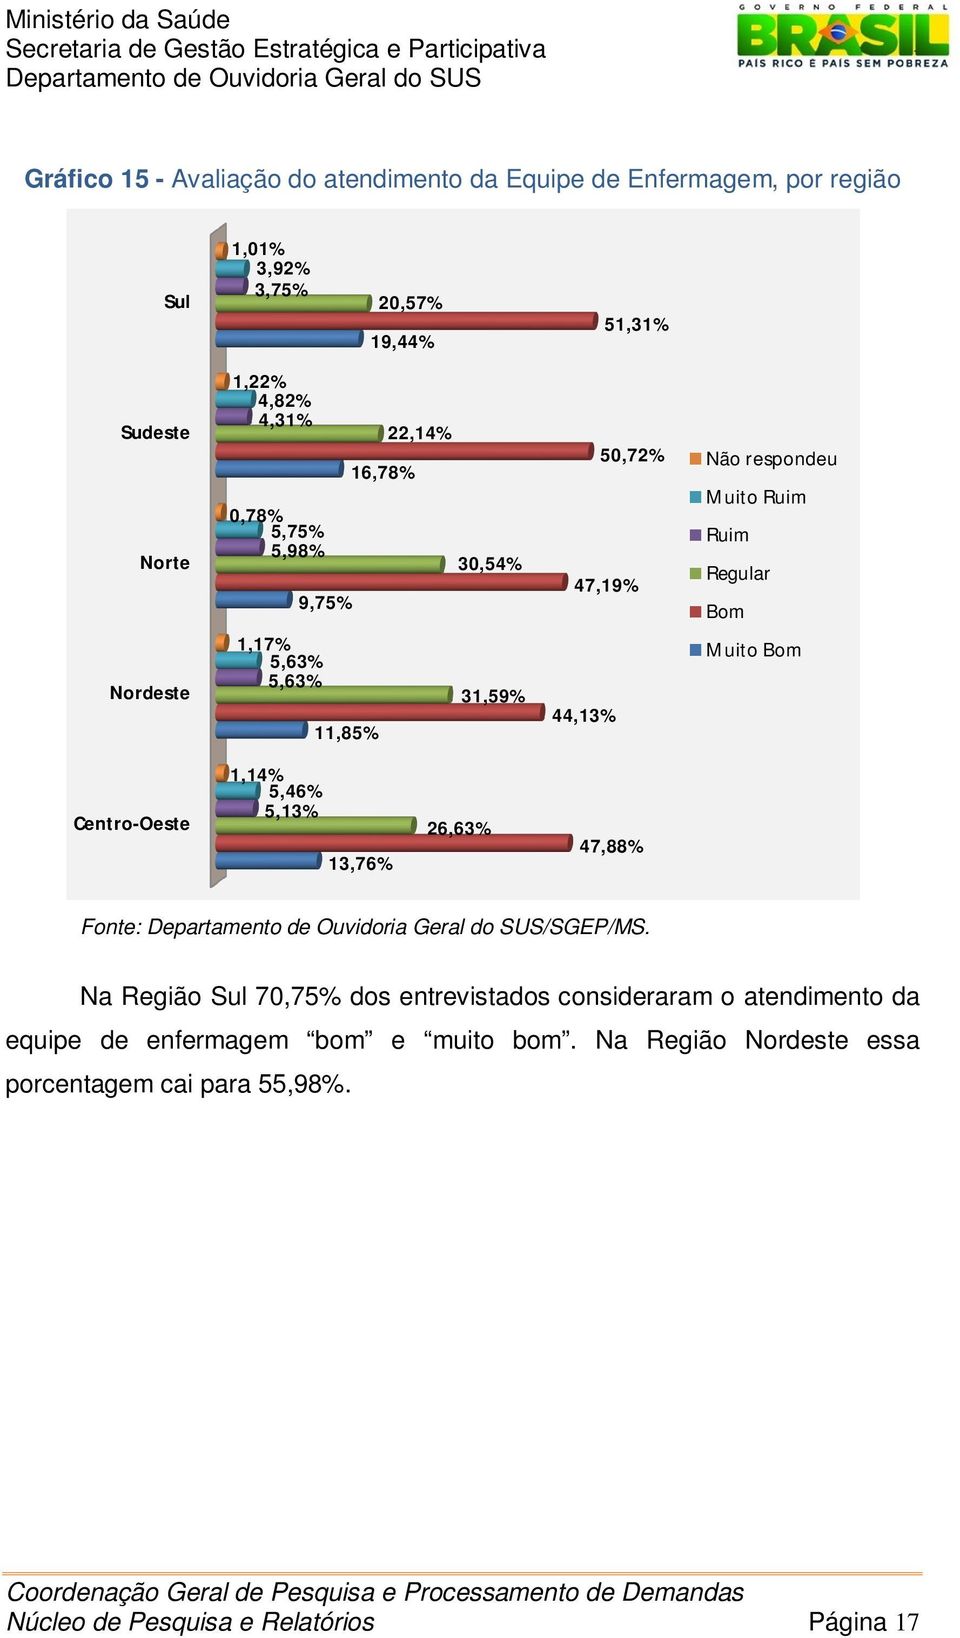 Ruim Regular Bom Muito Bom Centro-Oeste 1,14% 5,46% 5,13% 13,76% 26,63% 47,88% Fonte: /SGEP/MS.